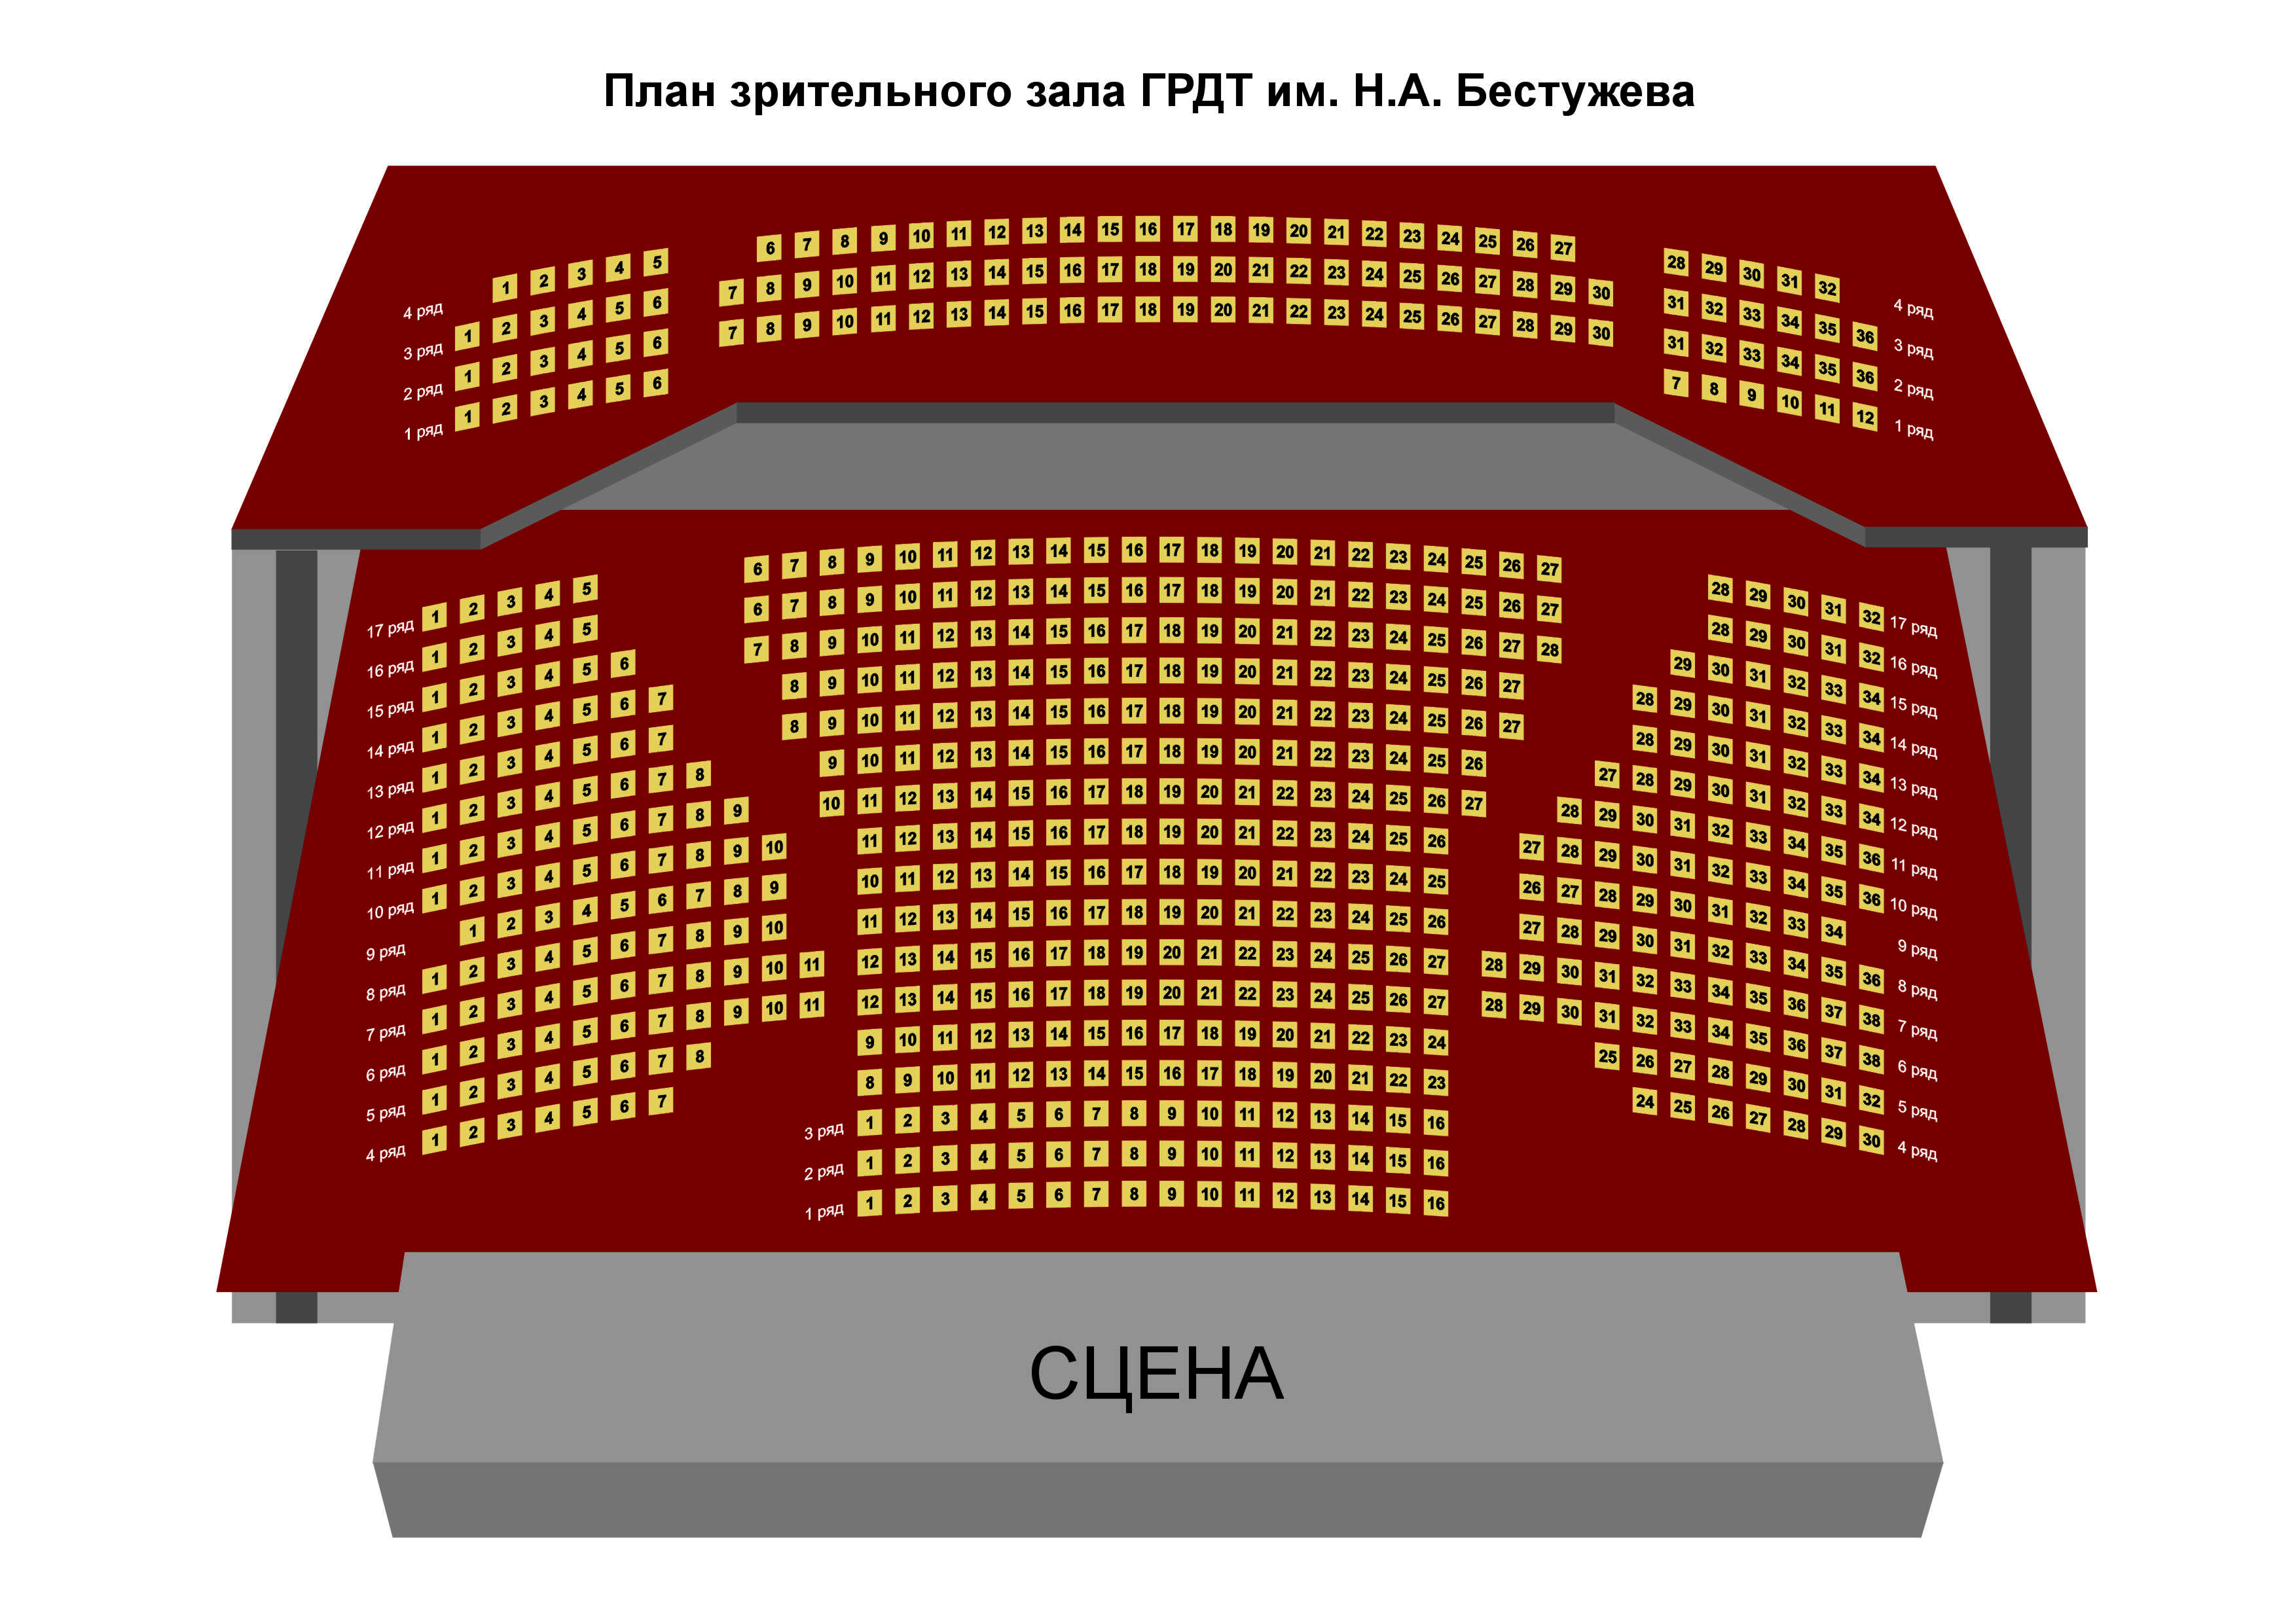 Музыкальный театр расположение мест в зале